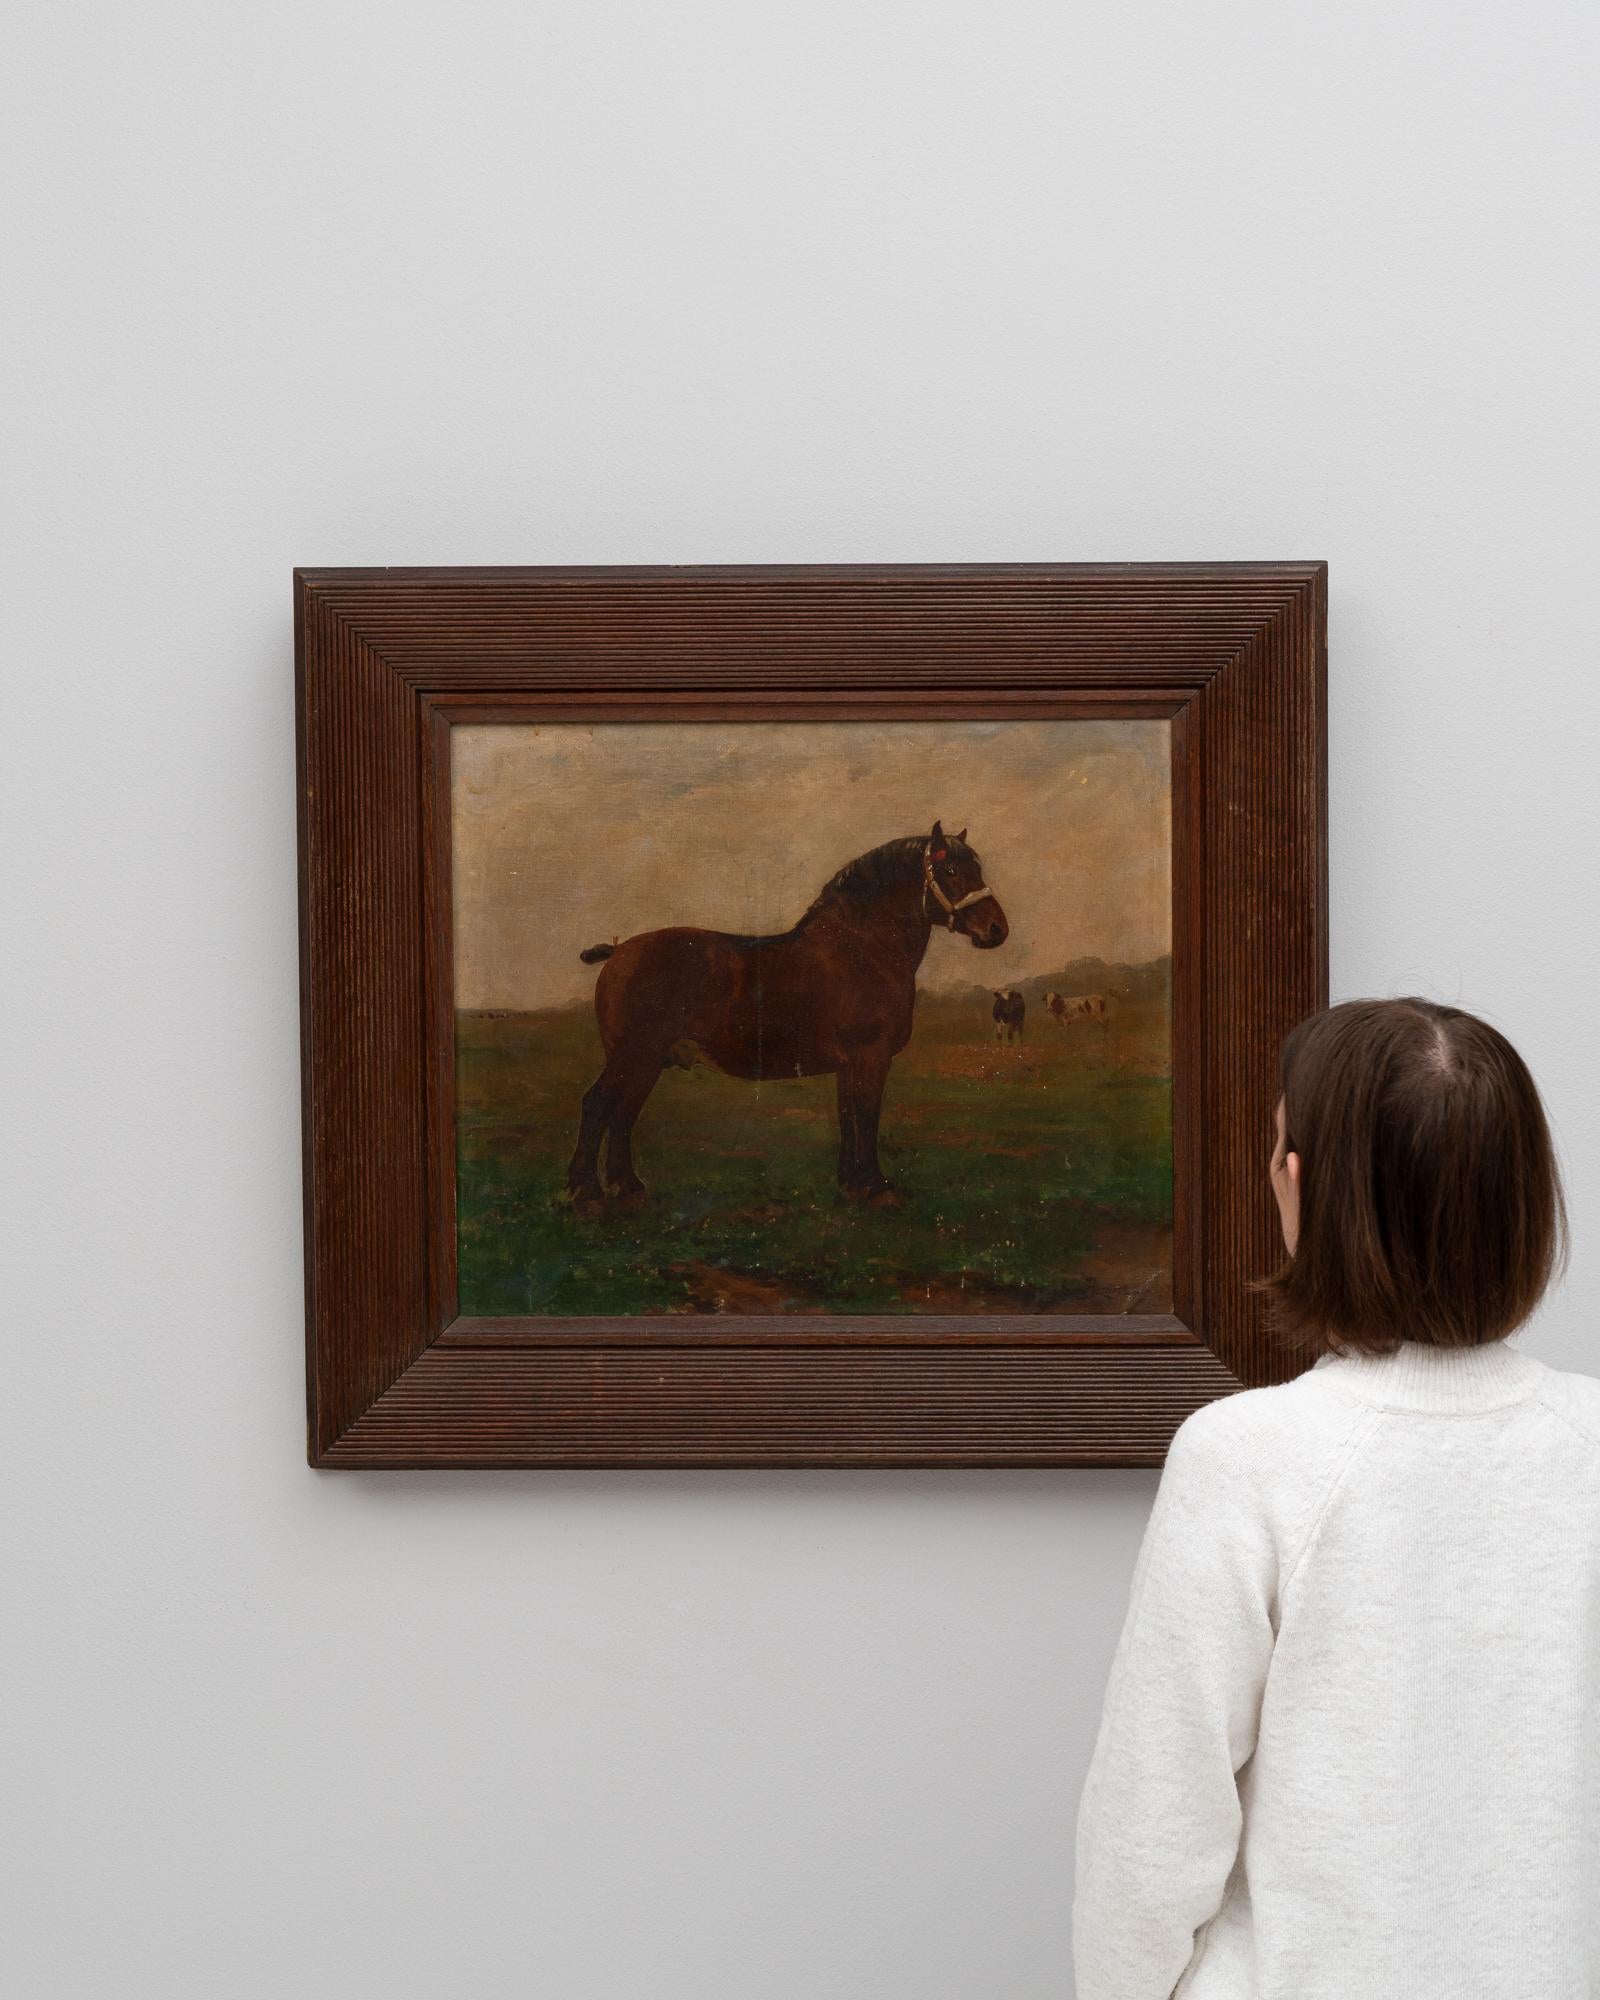 Cette peinture belge du XIXe siècle capture l'élégance pastorale et la beauté sereine de la vie rurale. L'œuvre d'art met en scène un cheval majestueux au premier plan, dont la robe d'un brun riche se détache sur les tons doux et terreux du paysage.